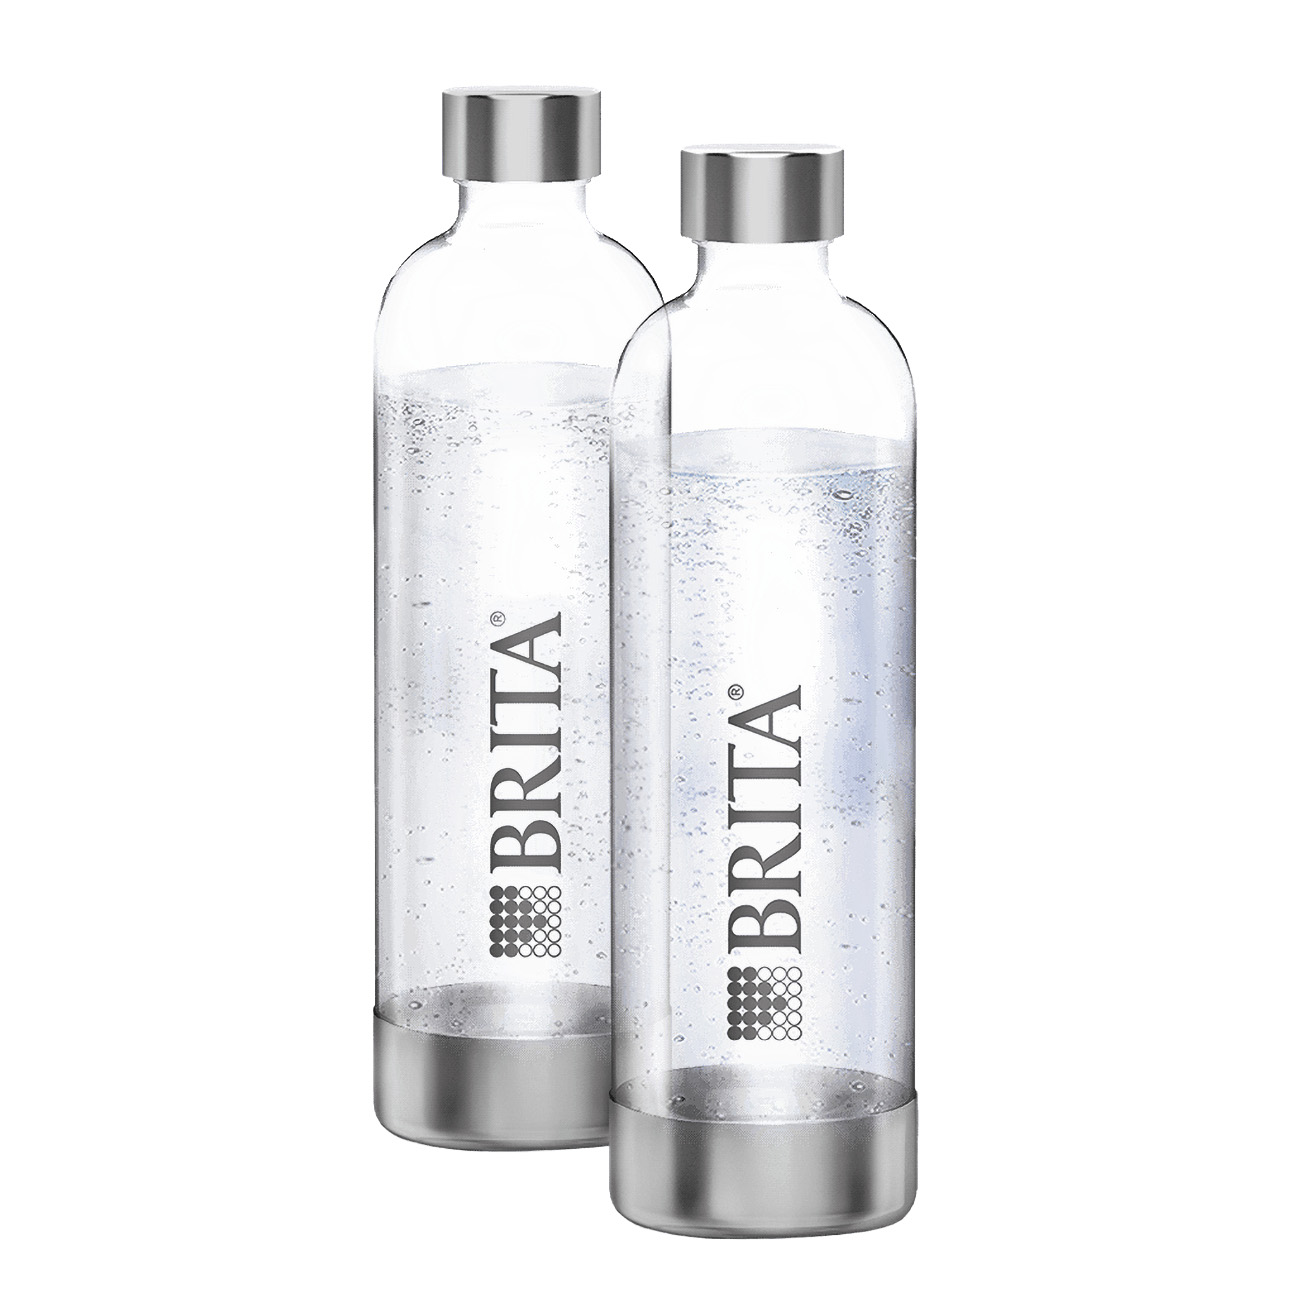 BRITA sodaONE PET Flaschen 1 Liter 2-Pack | Nachhaltigkeit im Doppelpack | Robust, leicht und praktisch | Gut für die Umwelt | 2 x 1 Liter PET-Flaschen